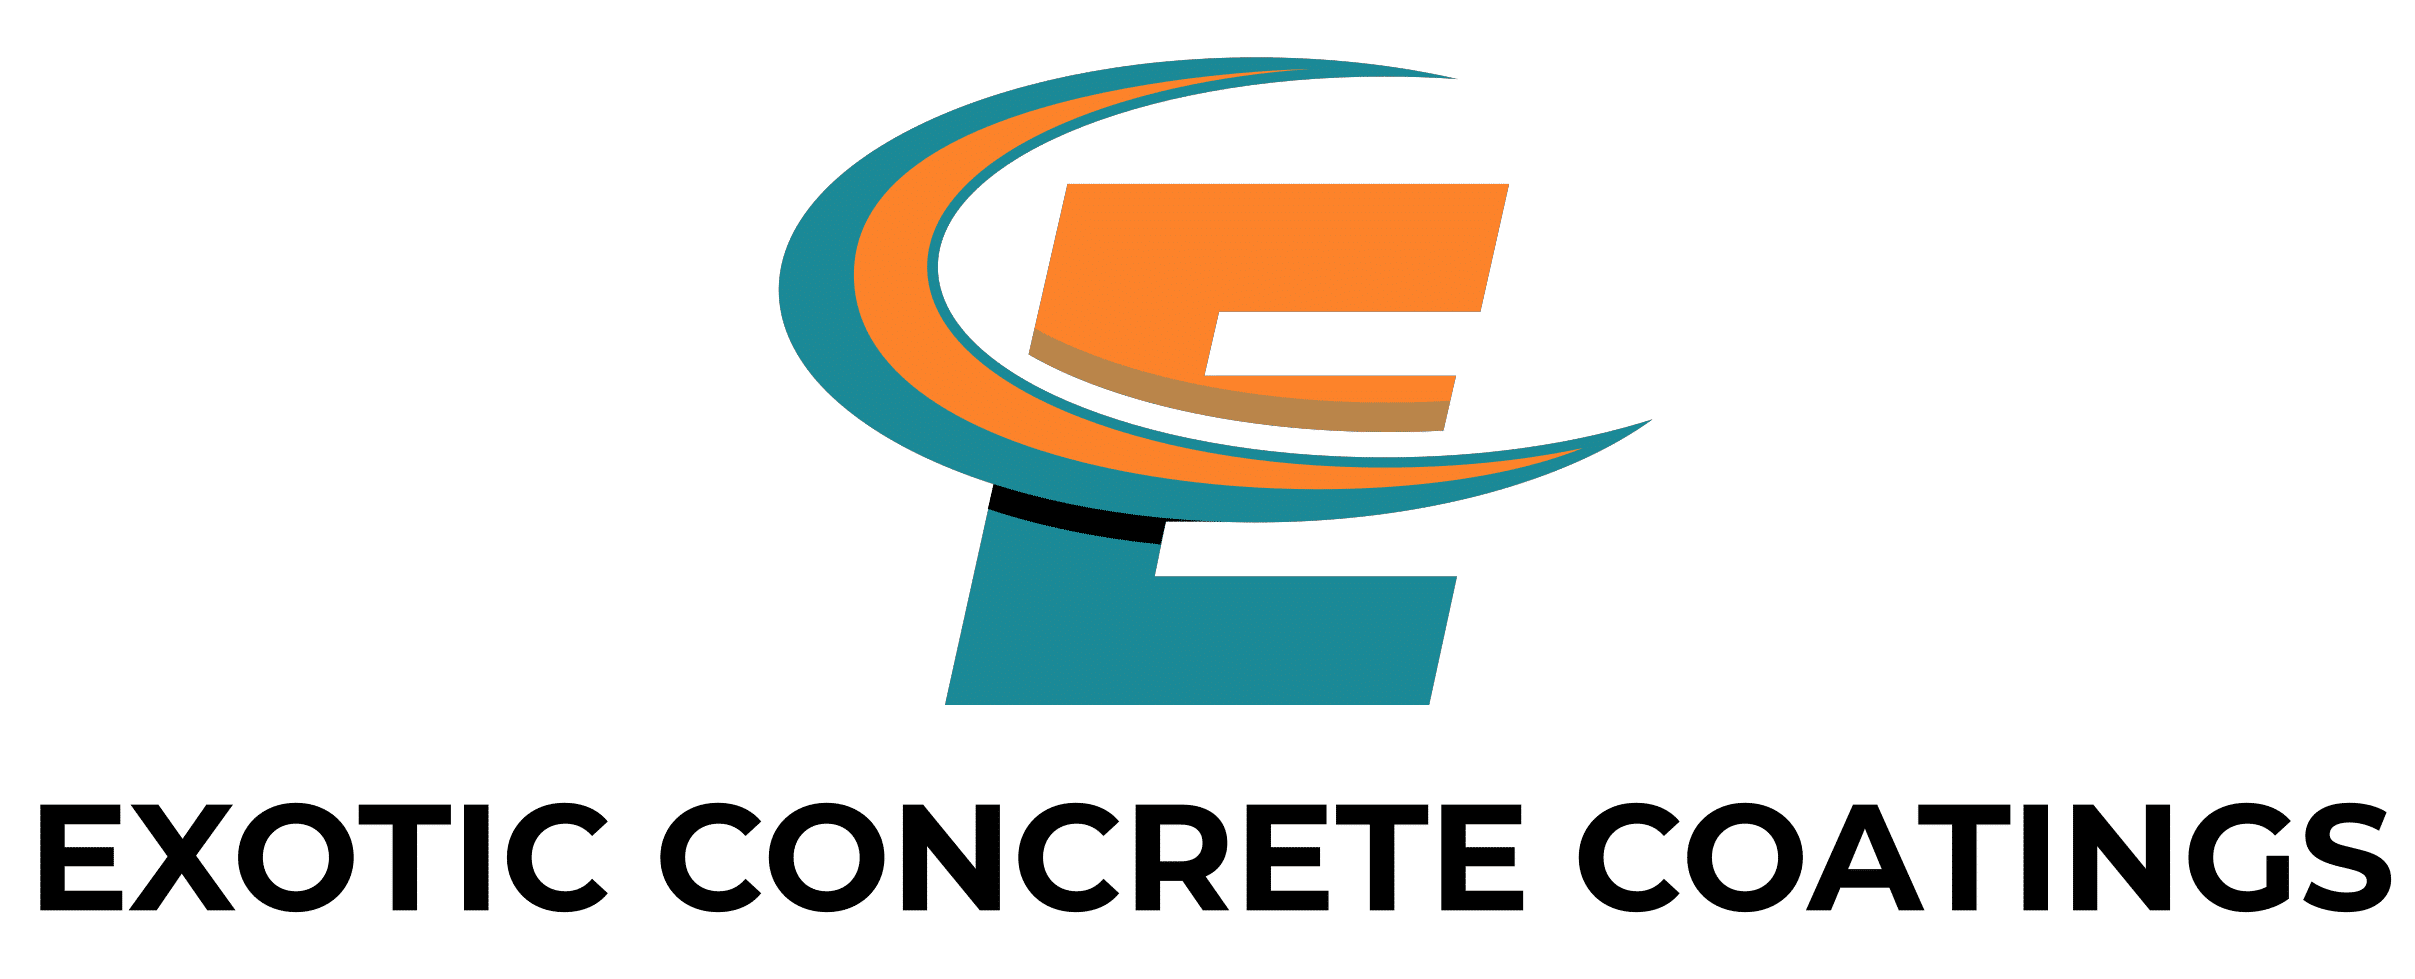 Garage Floor Coatings Green Bay WI Exotic Concrete Coatings Logo2